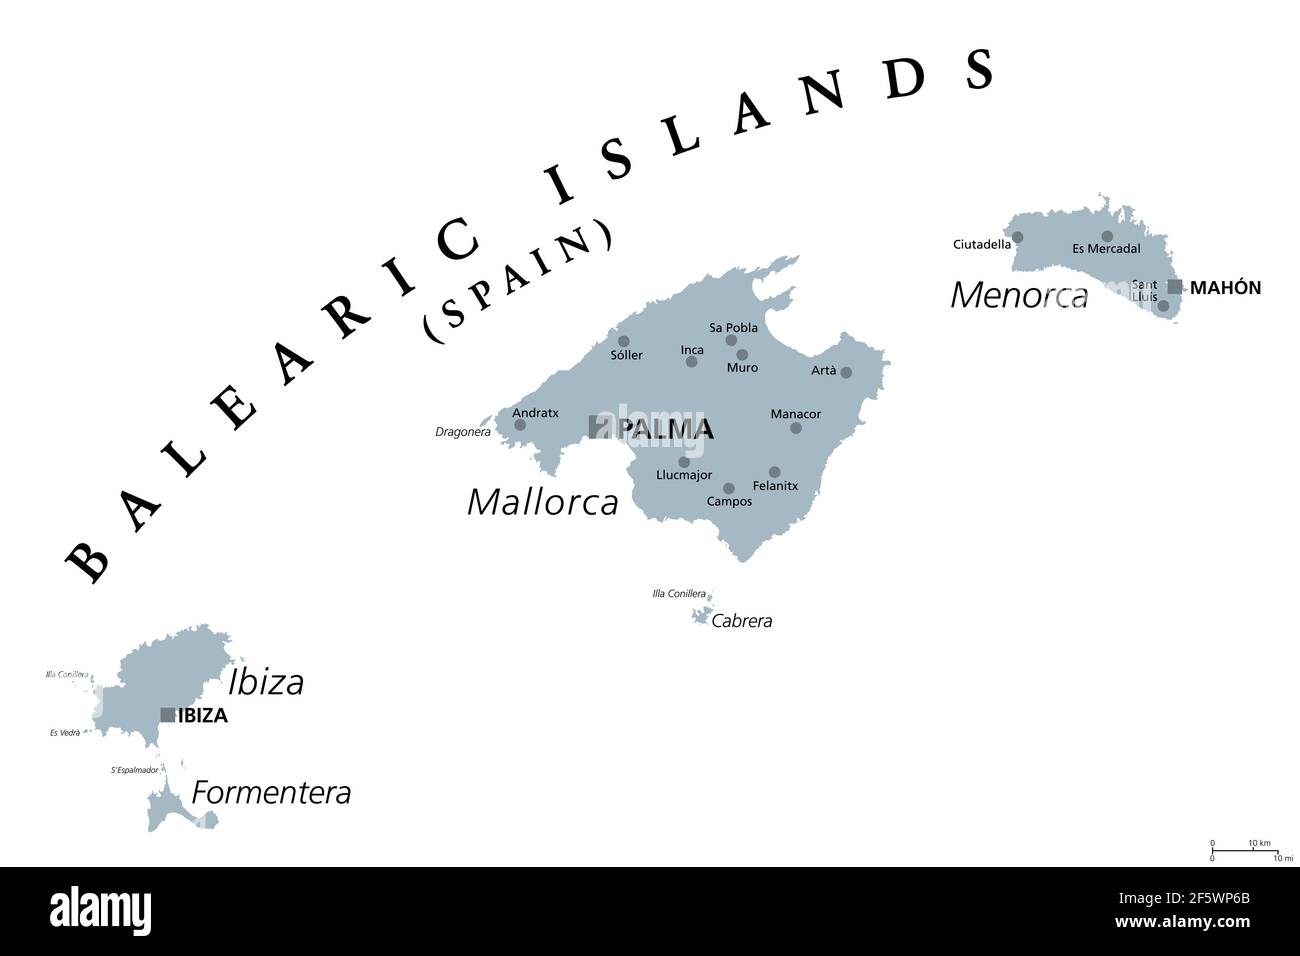 Balearen, graue politische Karte, mit den wichtigsten Inseln Mallorca, Ibiza, Menorca und Formentera. Archipel von Inseln in Spanien, Mittelmeer. Stockfoto